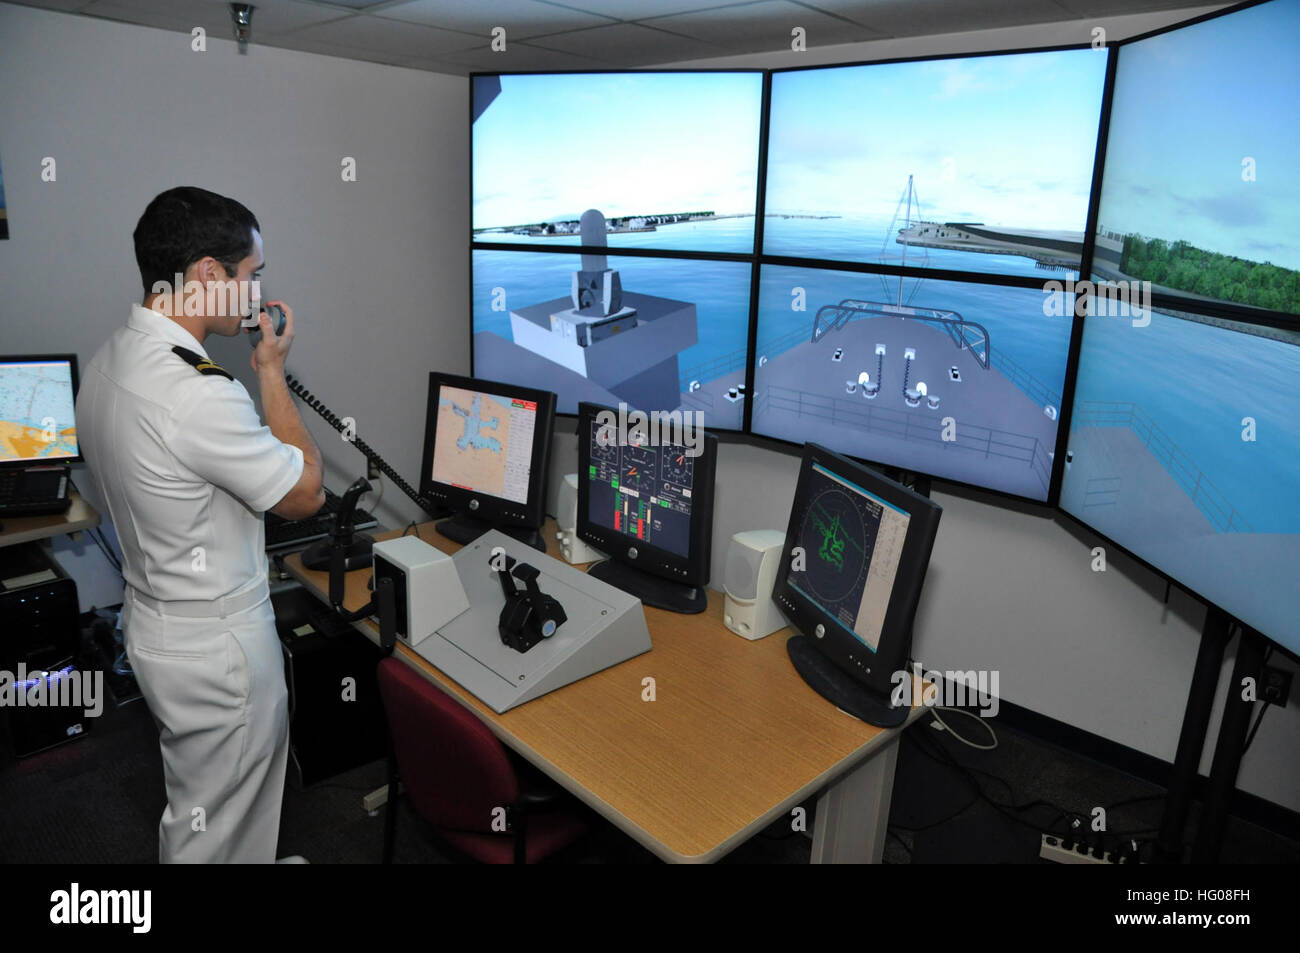 111103-N-YX169-043 Port Canaveral, Fla. (nov. 3, 2011) insegna Jared Hickey, assegnato per il trasporto anfibio dock nave USS Ponce (LPD 15), utilizza un sistema di riconoscimento vocale per il comando di una simulazione virtuale di Ponce nel Conning Officer ambiente virtuale (ANSA) nave simulatore di manipolazione trainer ufficio sviluppo presso la Naval Air Warfare Center Testing Systems Division (NAWCTSD) durante una visita della nave da Port Canaveral Fla., come parte di una marina outreach. Il Cove e può essere programmato per replicare qualsiasi nave della marina militare con qualsiasi condizione ambientale, consentendo conning ufficiali di pratica s Foto Stock